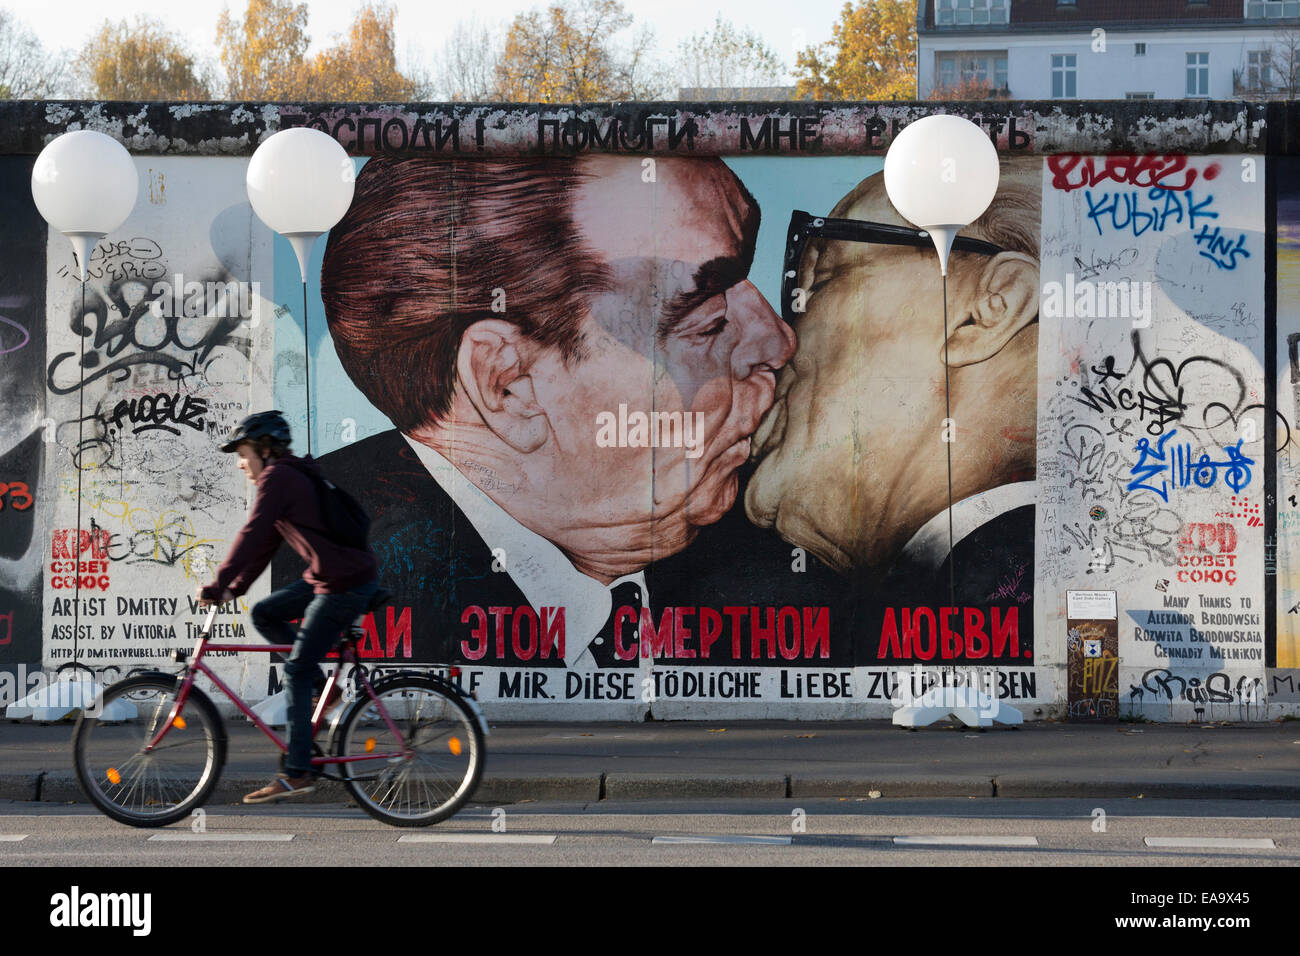 Lichtgrenze kunst Installation für das 25-jährige Jubiläum des Falls der Berliner Mauer an der East Side Gallery, Breshnew und Honecker Küssen von Dimitri Vrubel, Berlin, Deutschland. Stockfoto